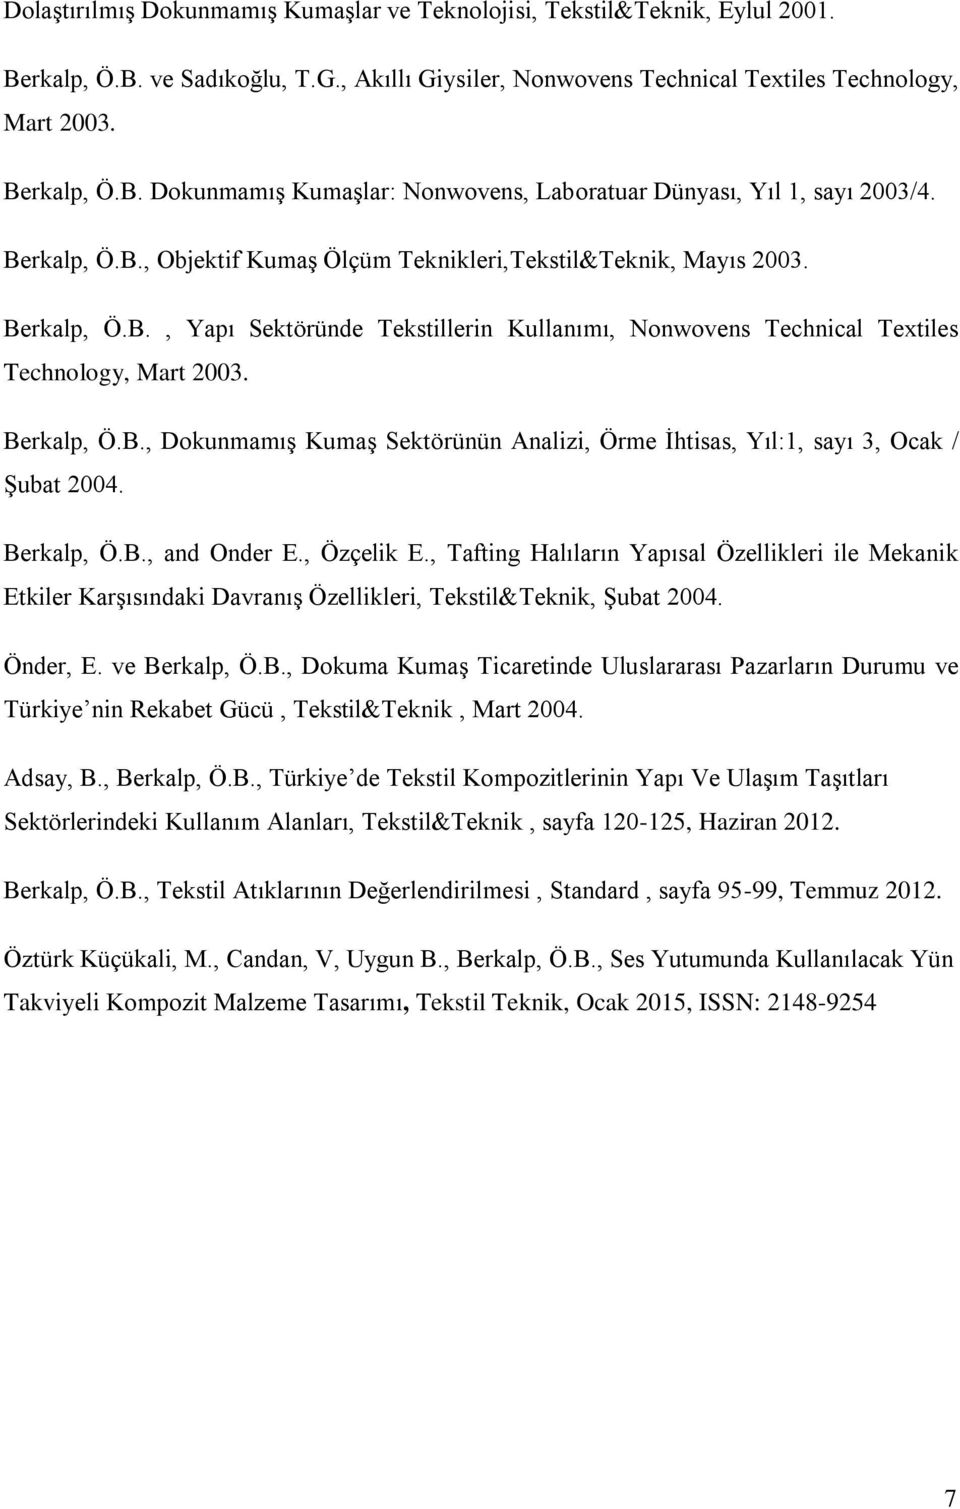 Berkalp, Ö.B., and Onder E., Özçelik E., Tafting Halıların Yapısal Özellikleri ile Mekanik Etkiler Karşısındaki Davranış Özellikleri, Tekstil&Teknik, Şubat 2004. Önder, E. ve Berkalp, Ö.B., Dokuma Kumaş Ticaretinde Uluslararası Pazarların Durumu ve Türkiye nin Rekabet Gücü, Tekstil&Teknik, Mart 2004.